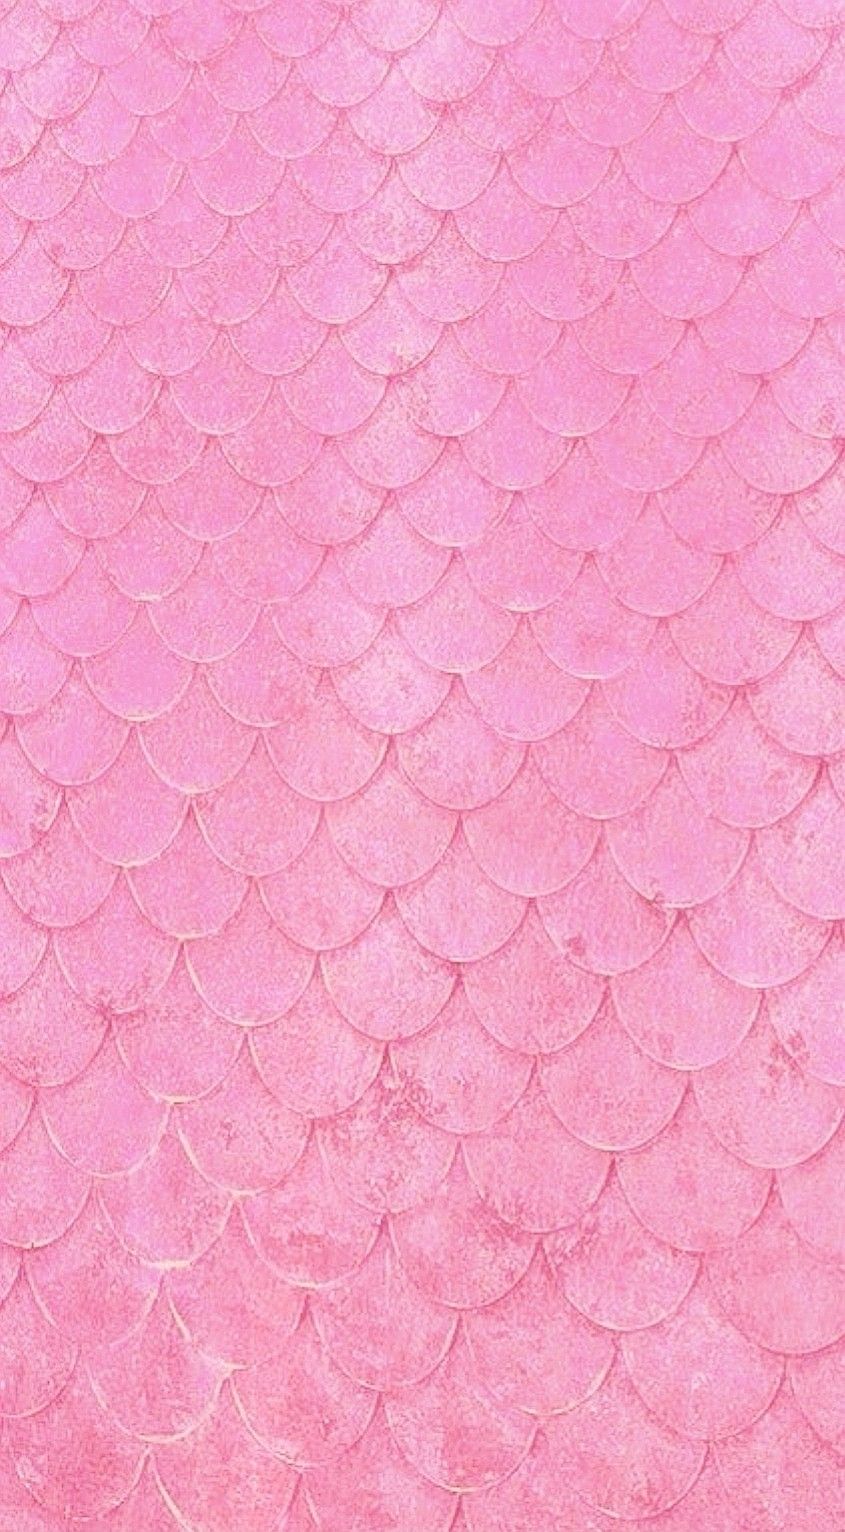 Pink Mermaid Tail Mermaid wallpaper iphone Mermaid wallpapers